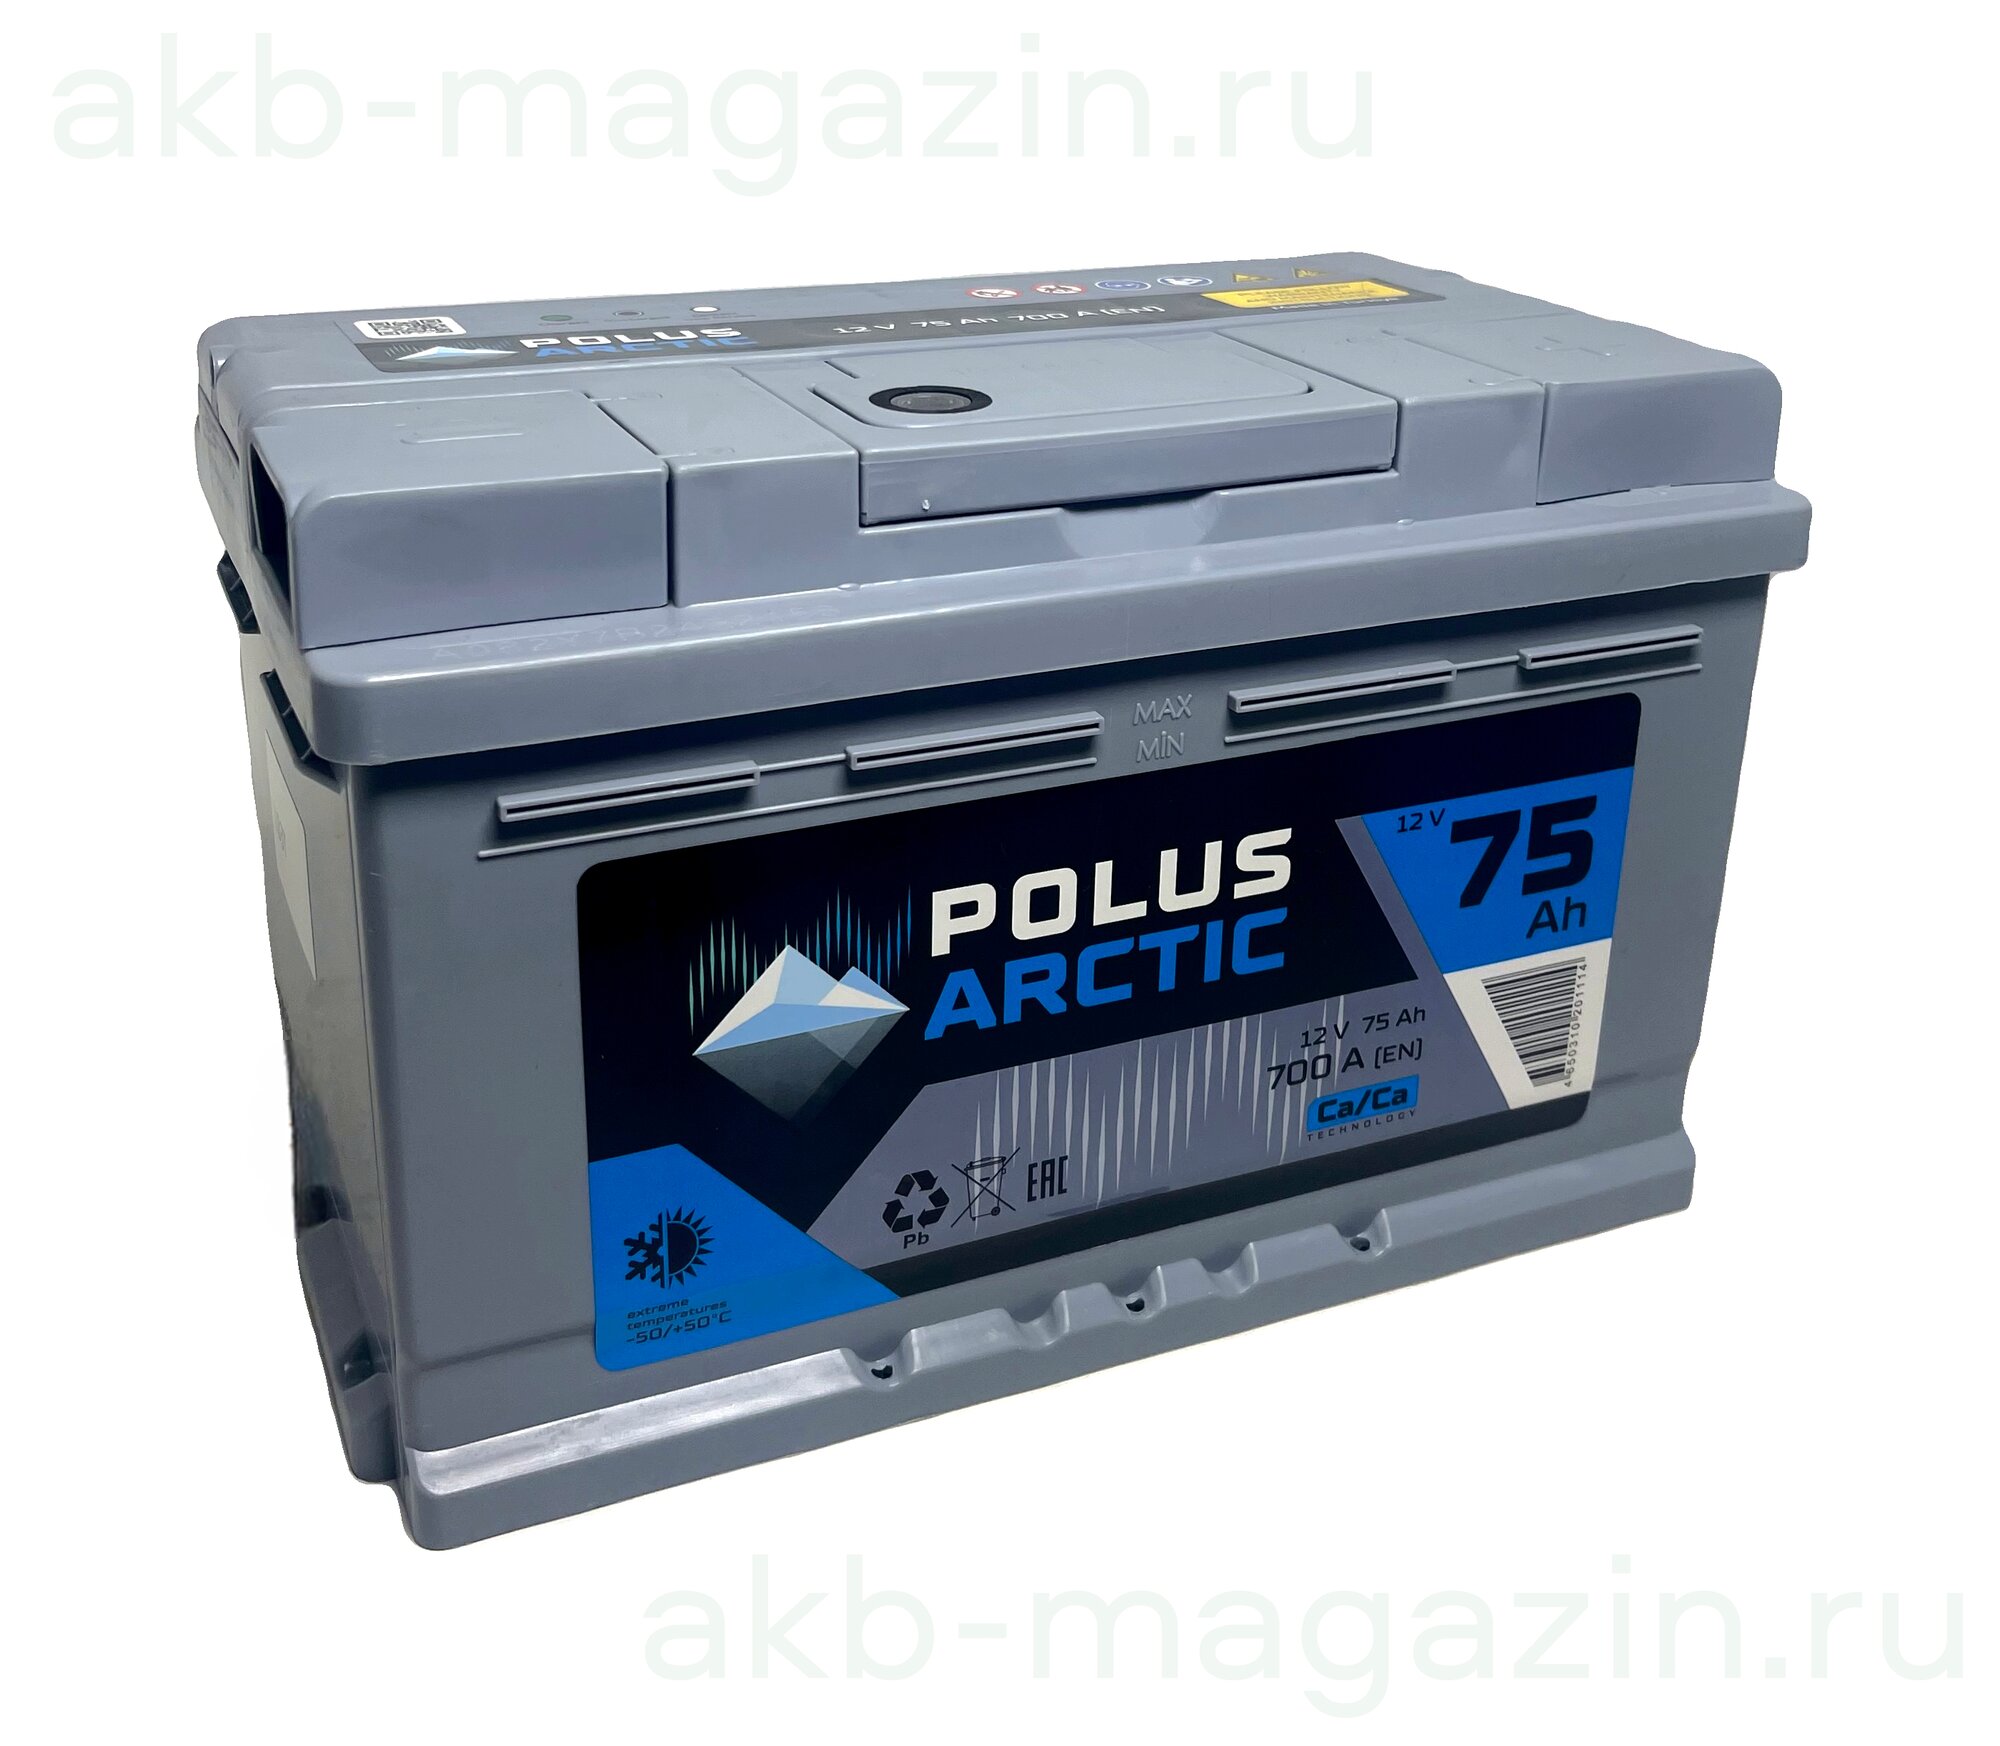 Автомобильный аккумулятор Polus Arctic 75 Ah 700A обрат. пол. низ